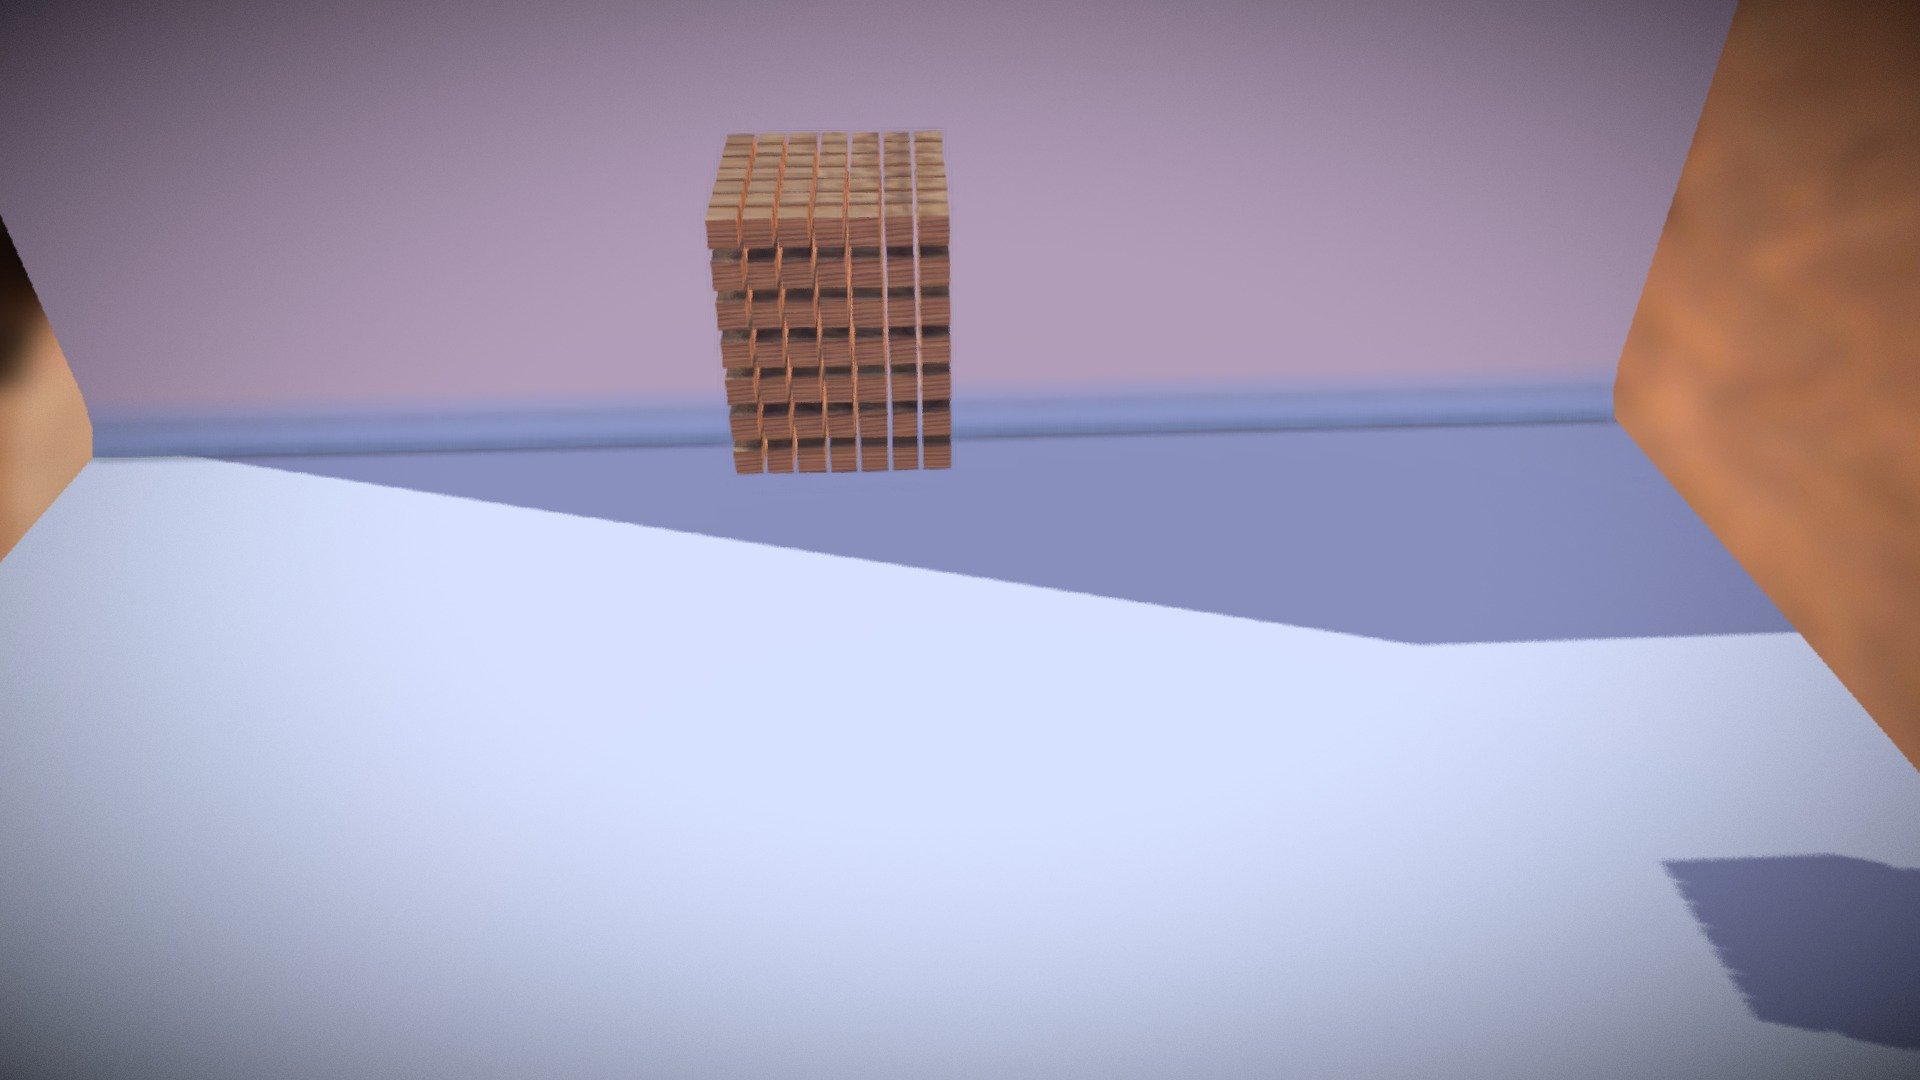 Falling boxes physics animation